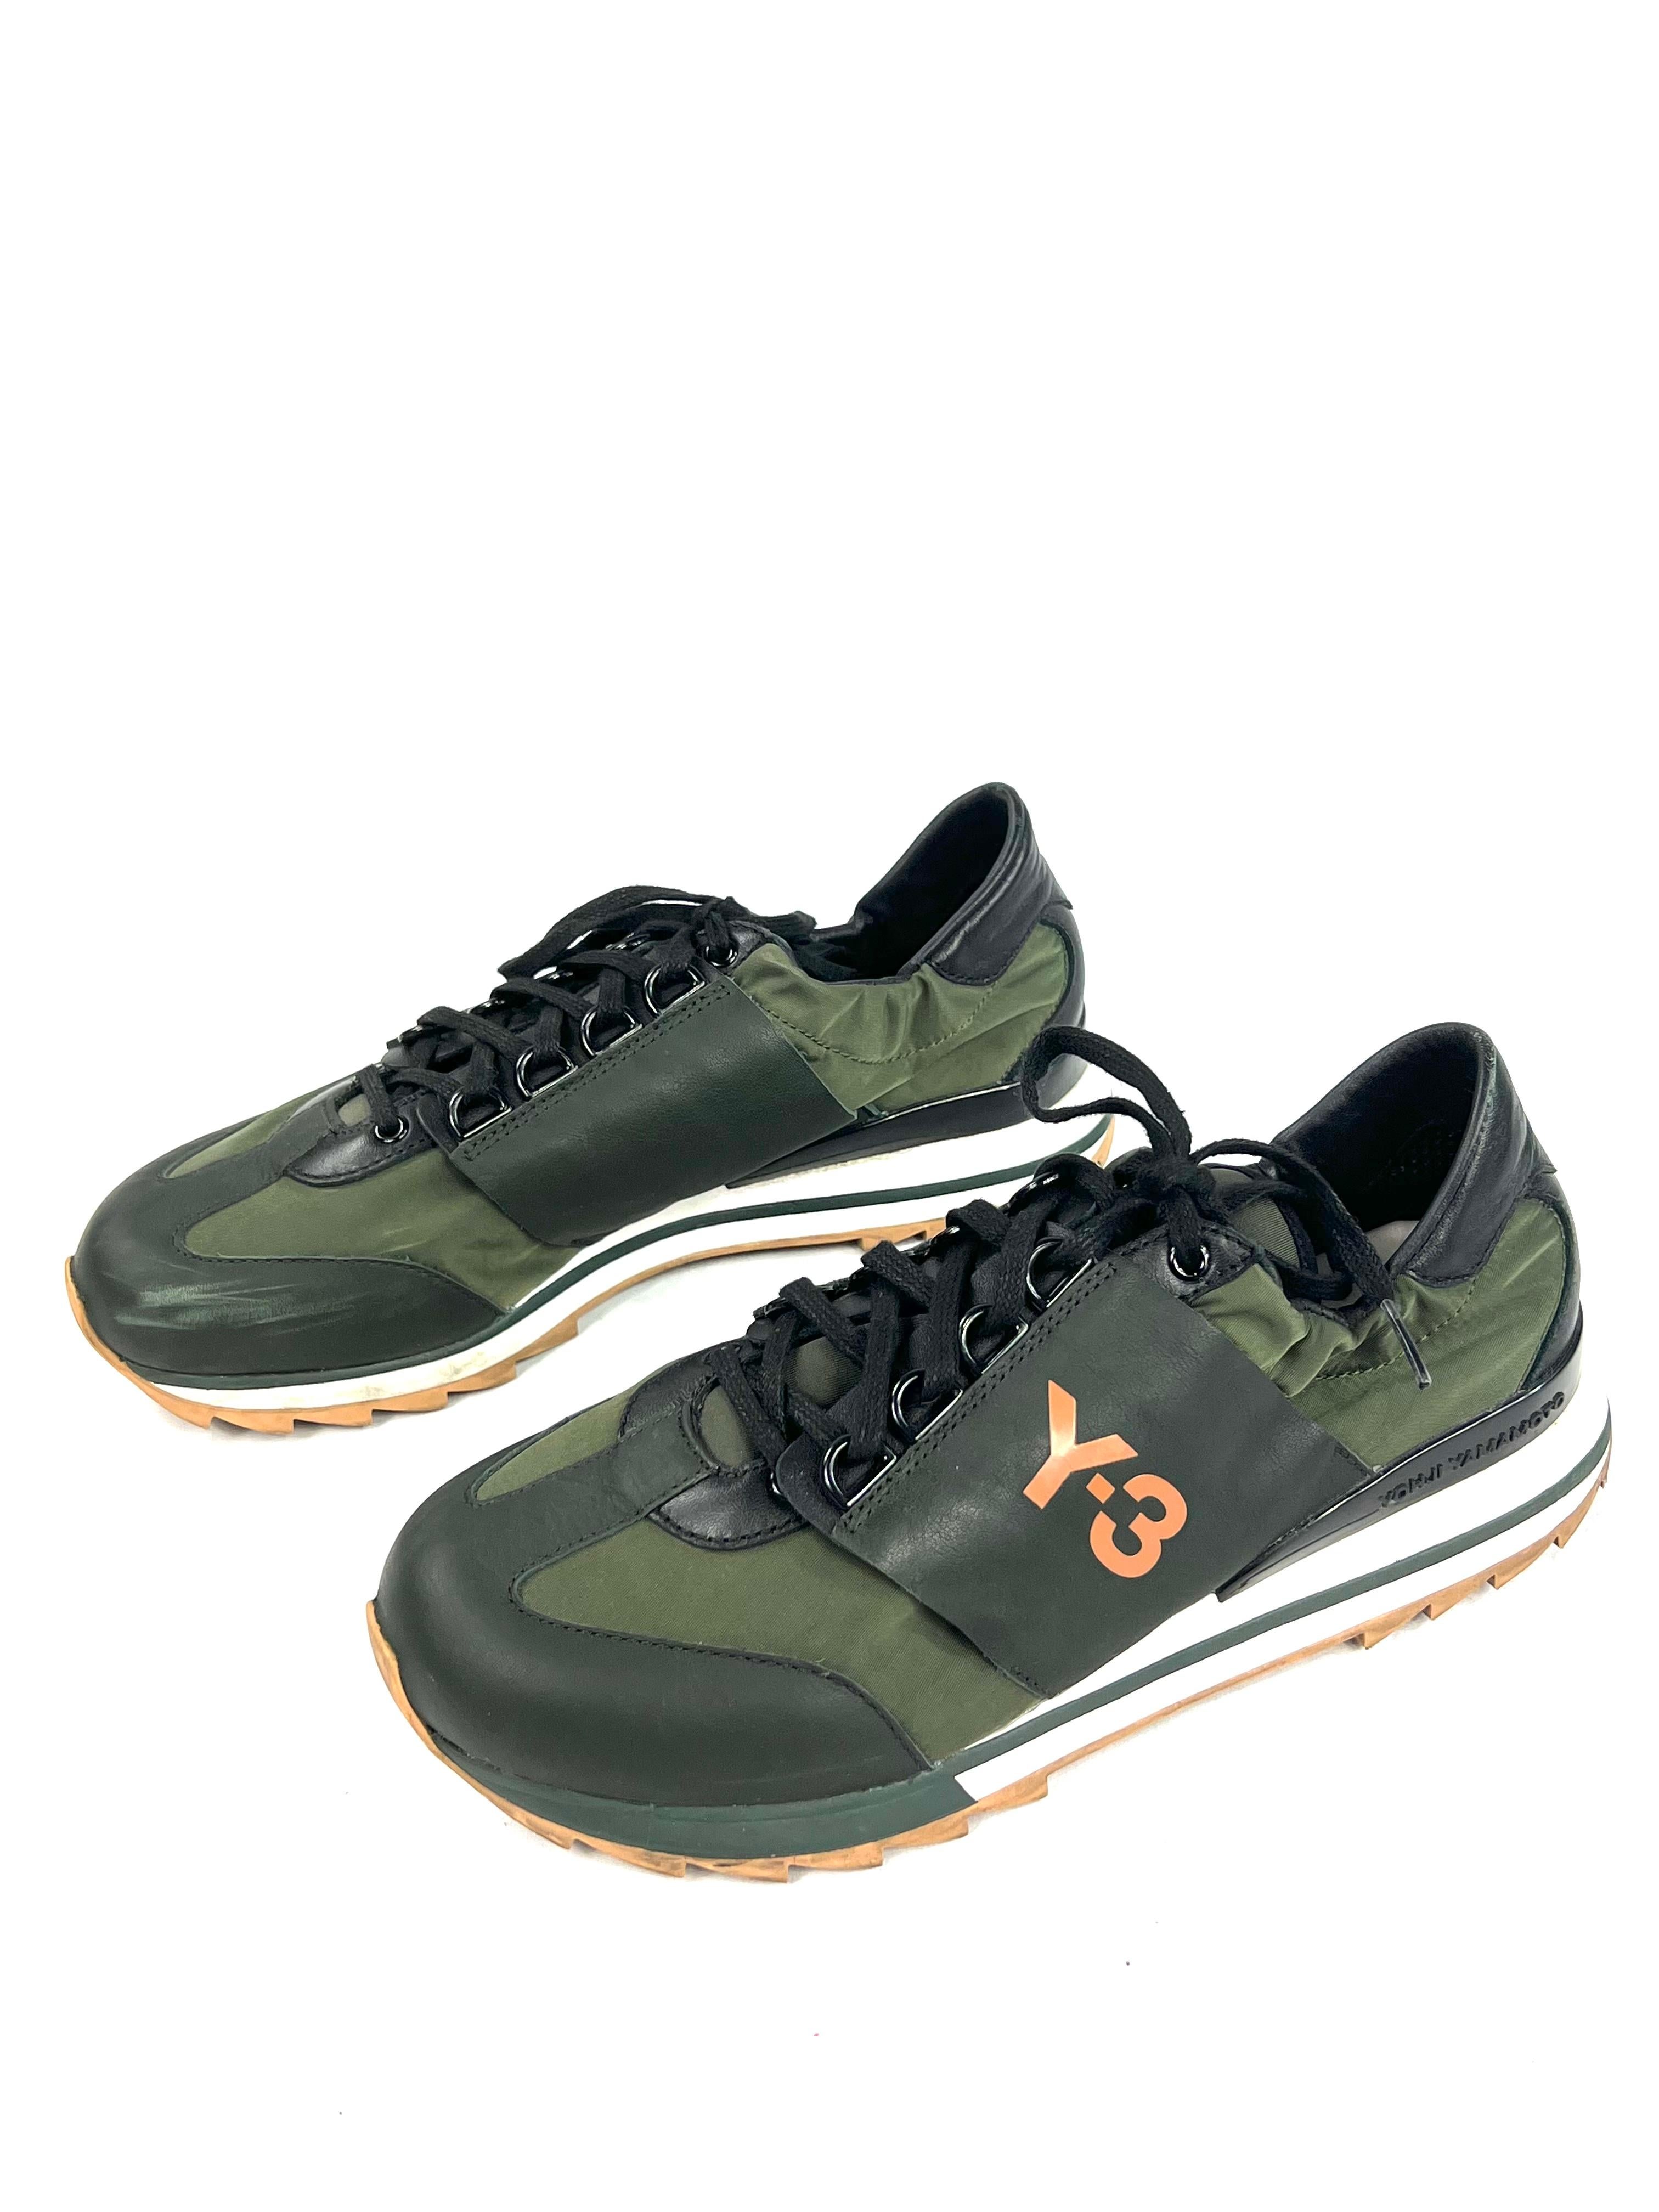 Einzelheiten zum Produkt:

Die sportlichen Sneaker sind aus grünem Leder und Nylon gefertigt und verfügen über einen Schnürverschluss und ein orangefarbenes Y-3 Markenzeichen an den Außenseiten. Wird mit dem Originalkarton geliefert.